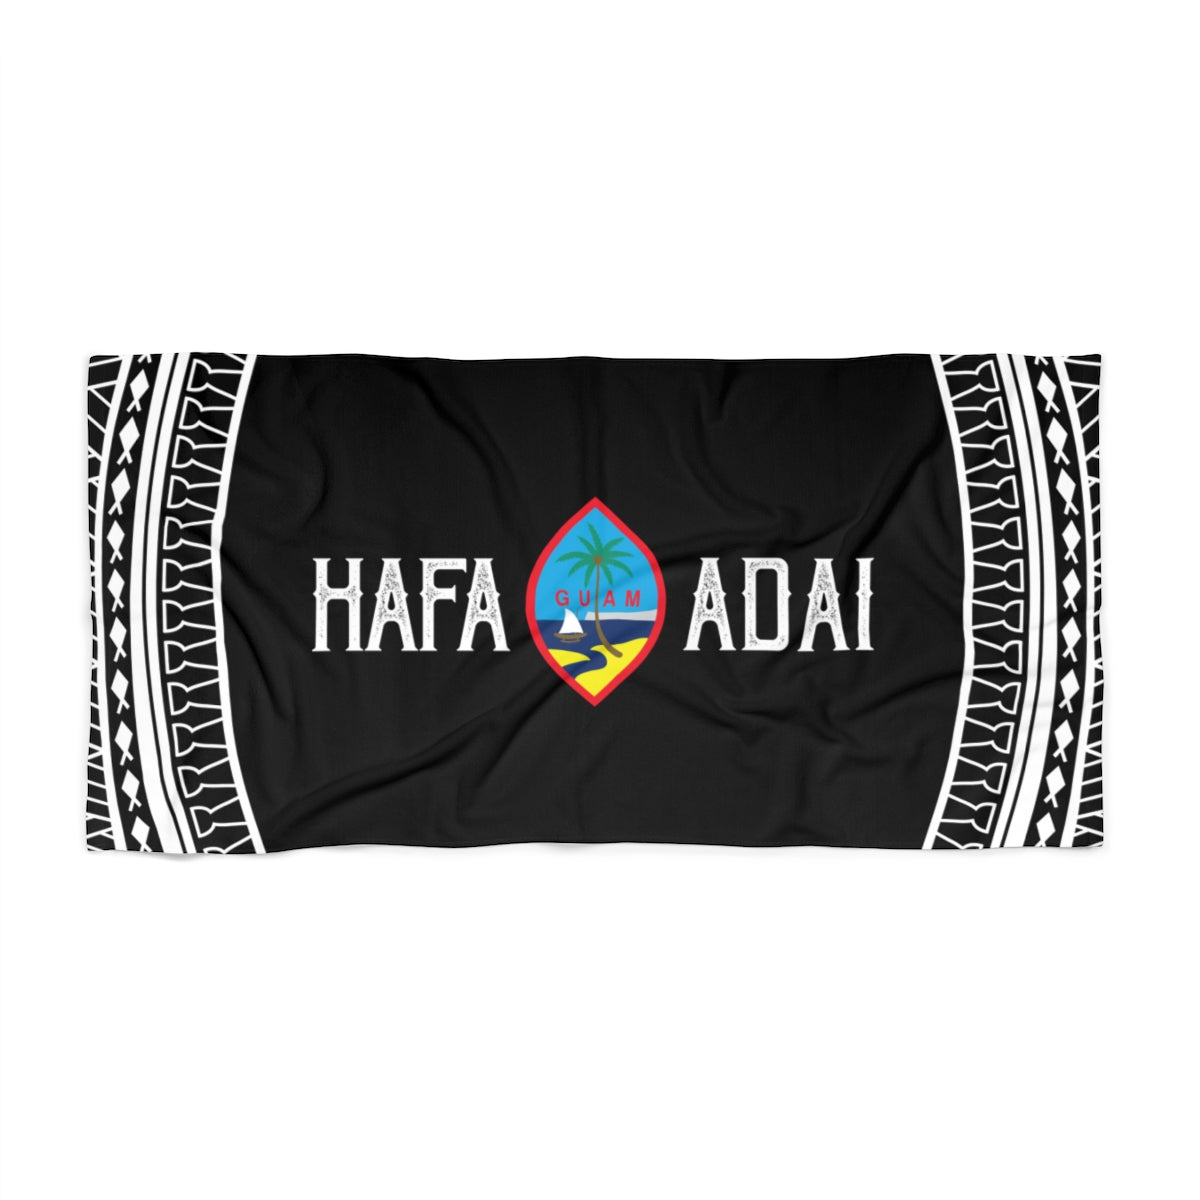 Hafa Adai Guam Tribal Black Beach Towel